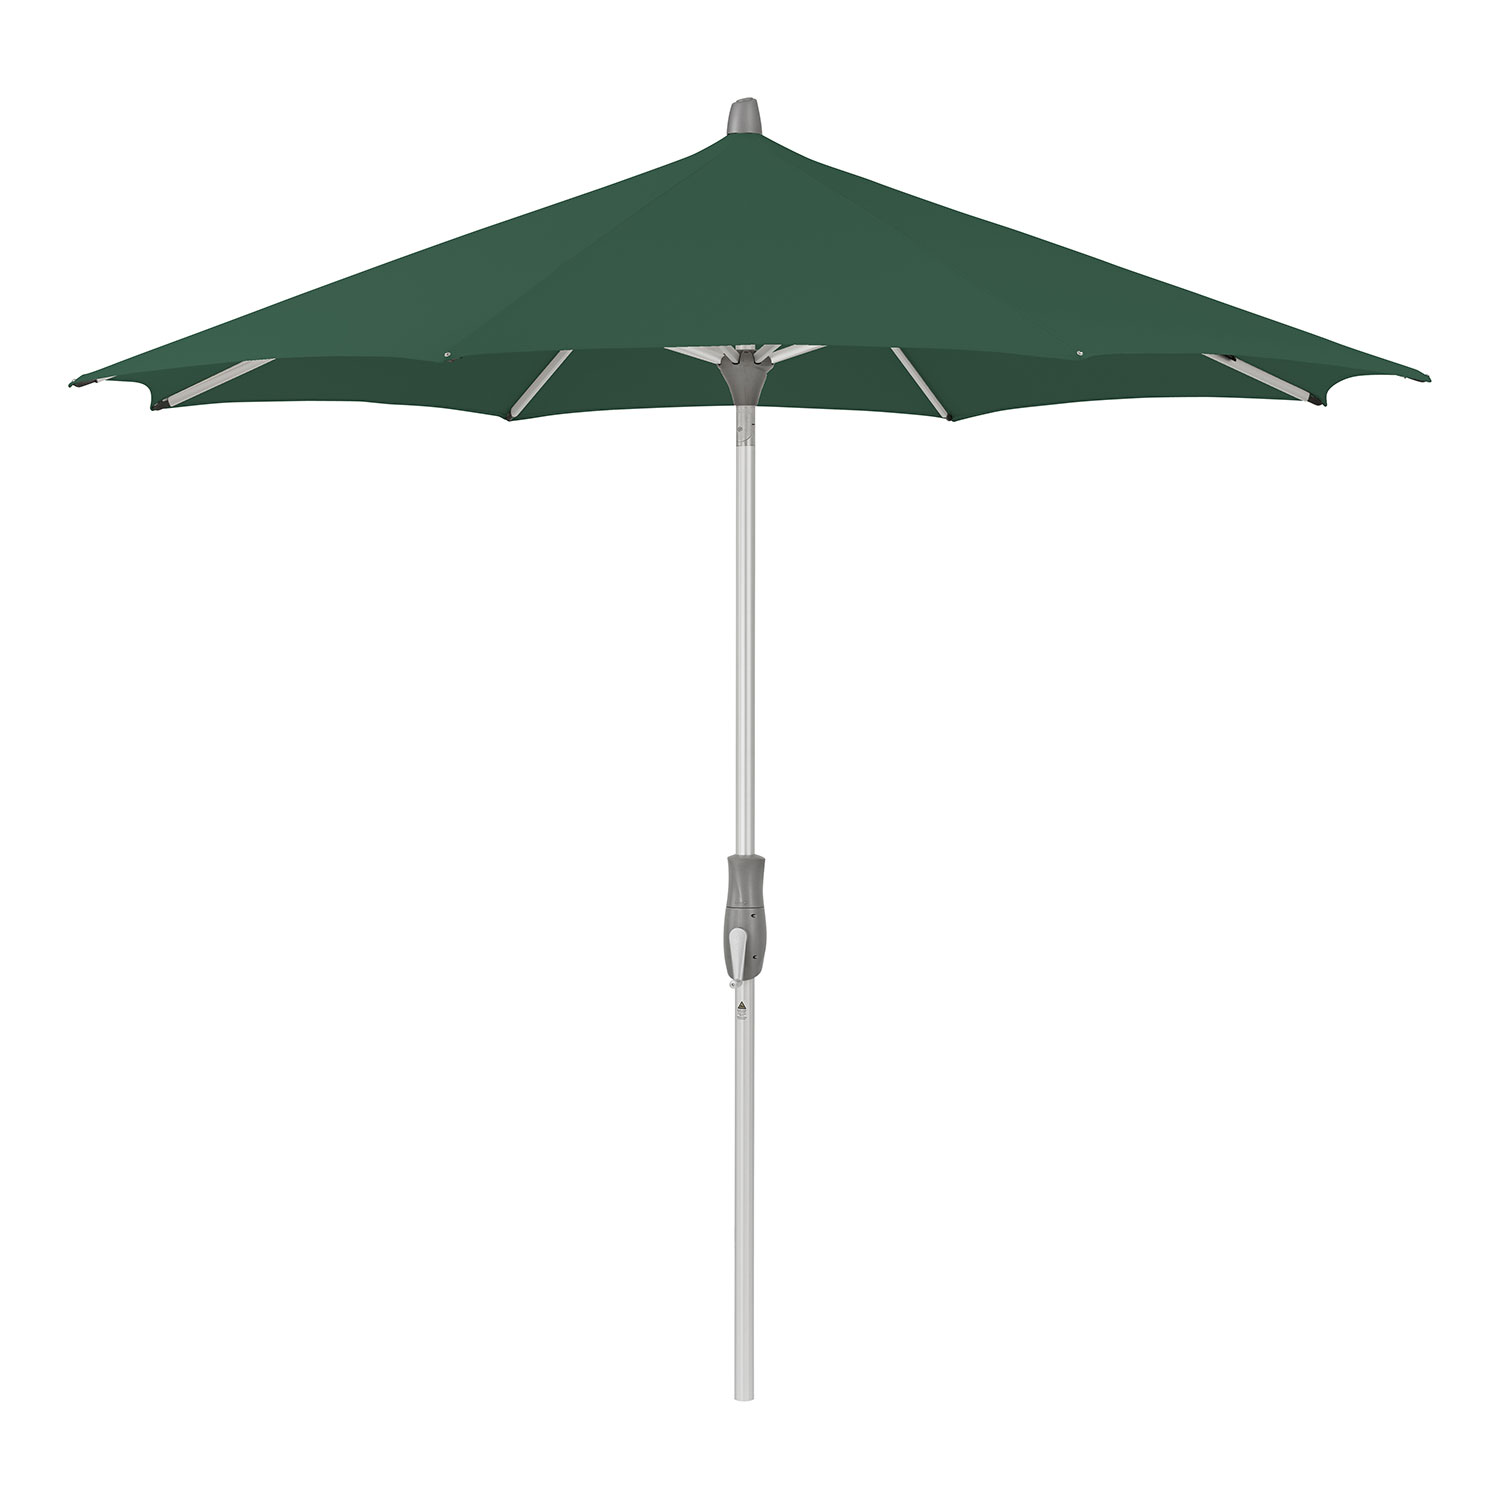 Glatz Alu-twist parasol 330 cm kat.5 521 aloe